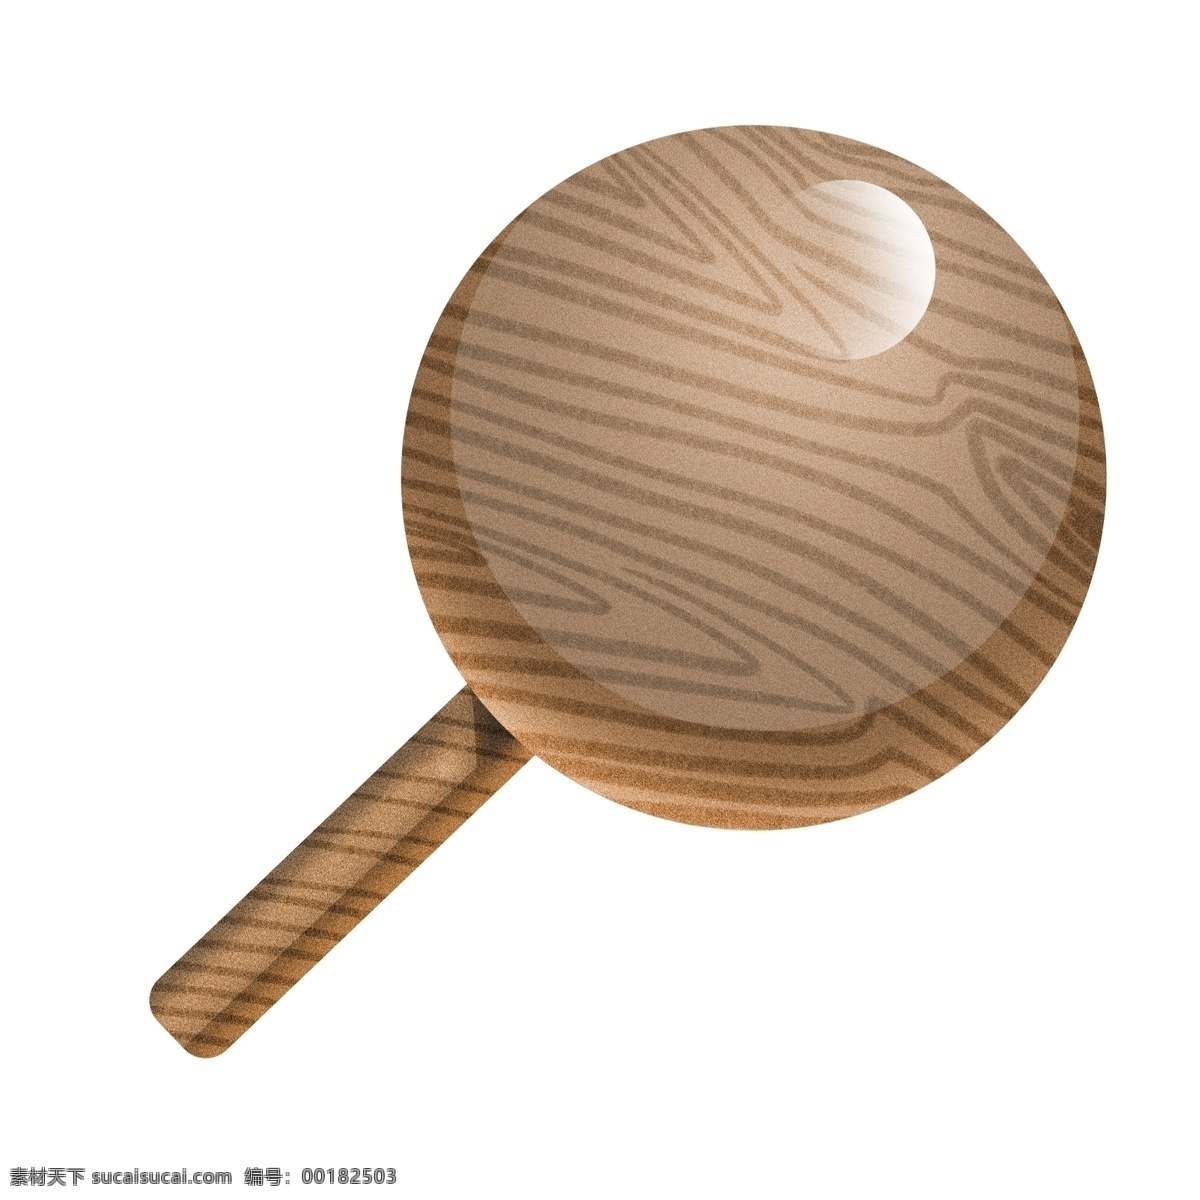 创意 木质 卡通 插画 创意的木质 卡通插画 木质插画 木板插画 木头 木块 木材 圆圆的木质